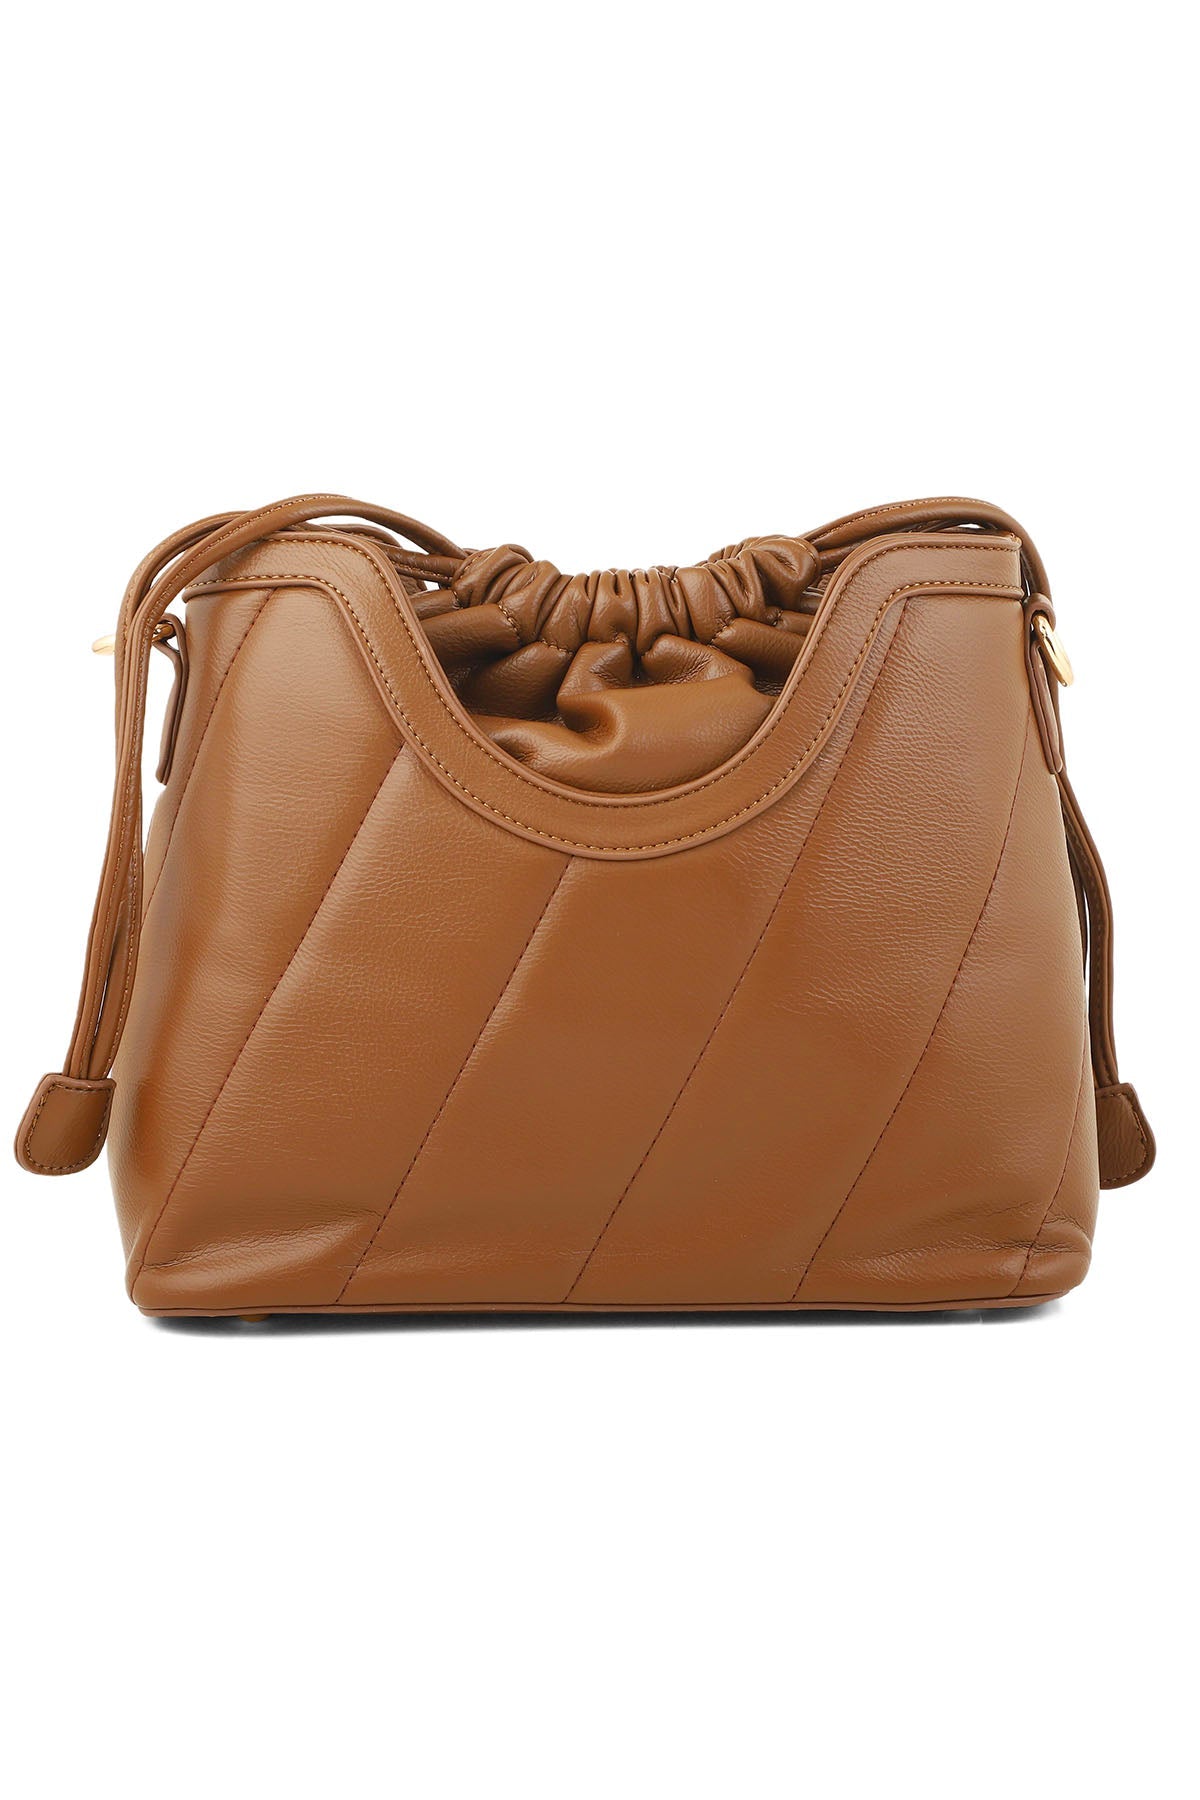 Hobo Hand Bags B15131-Brown